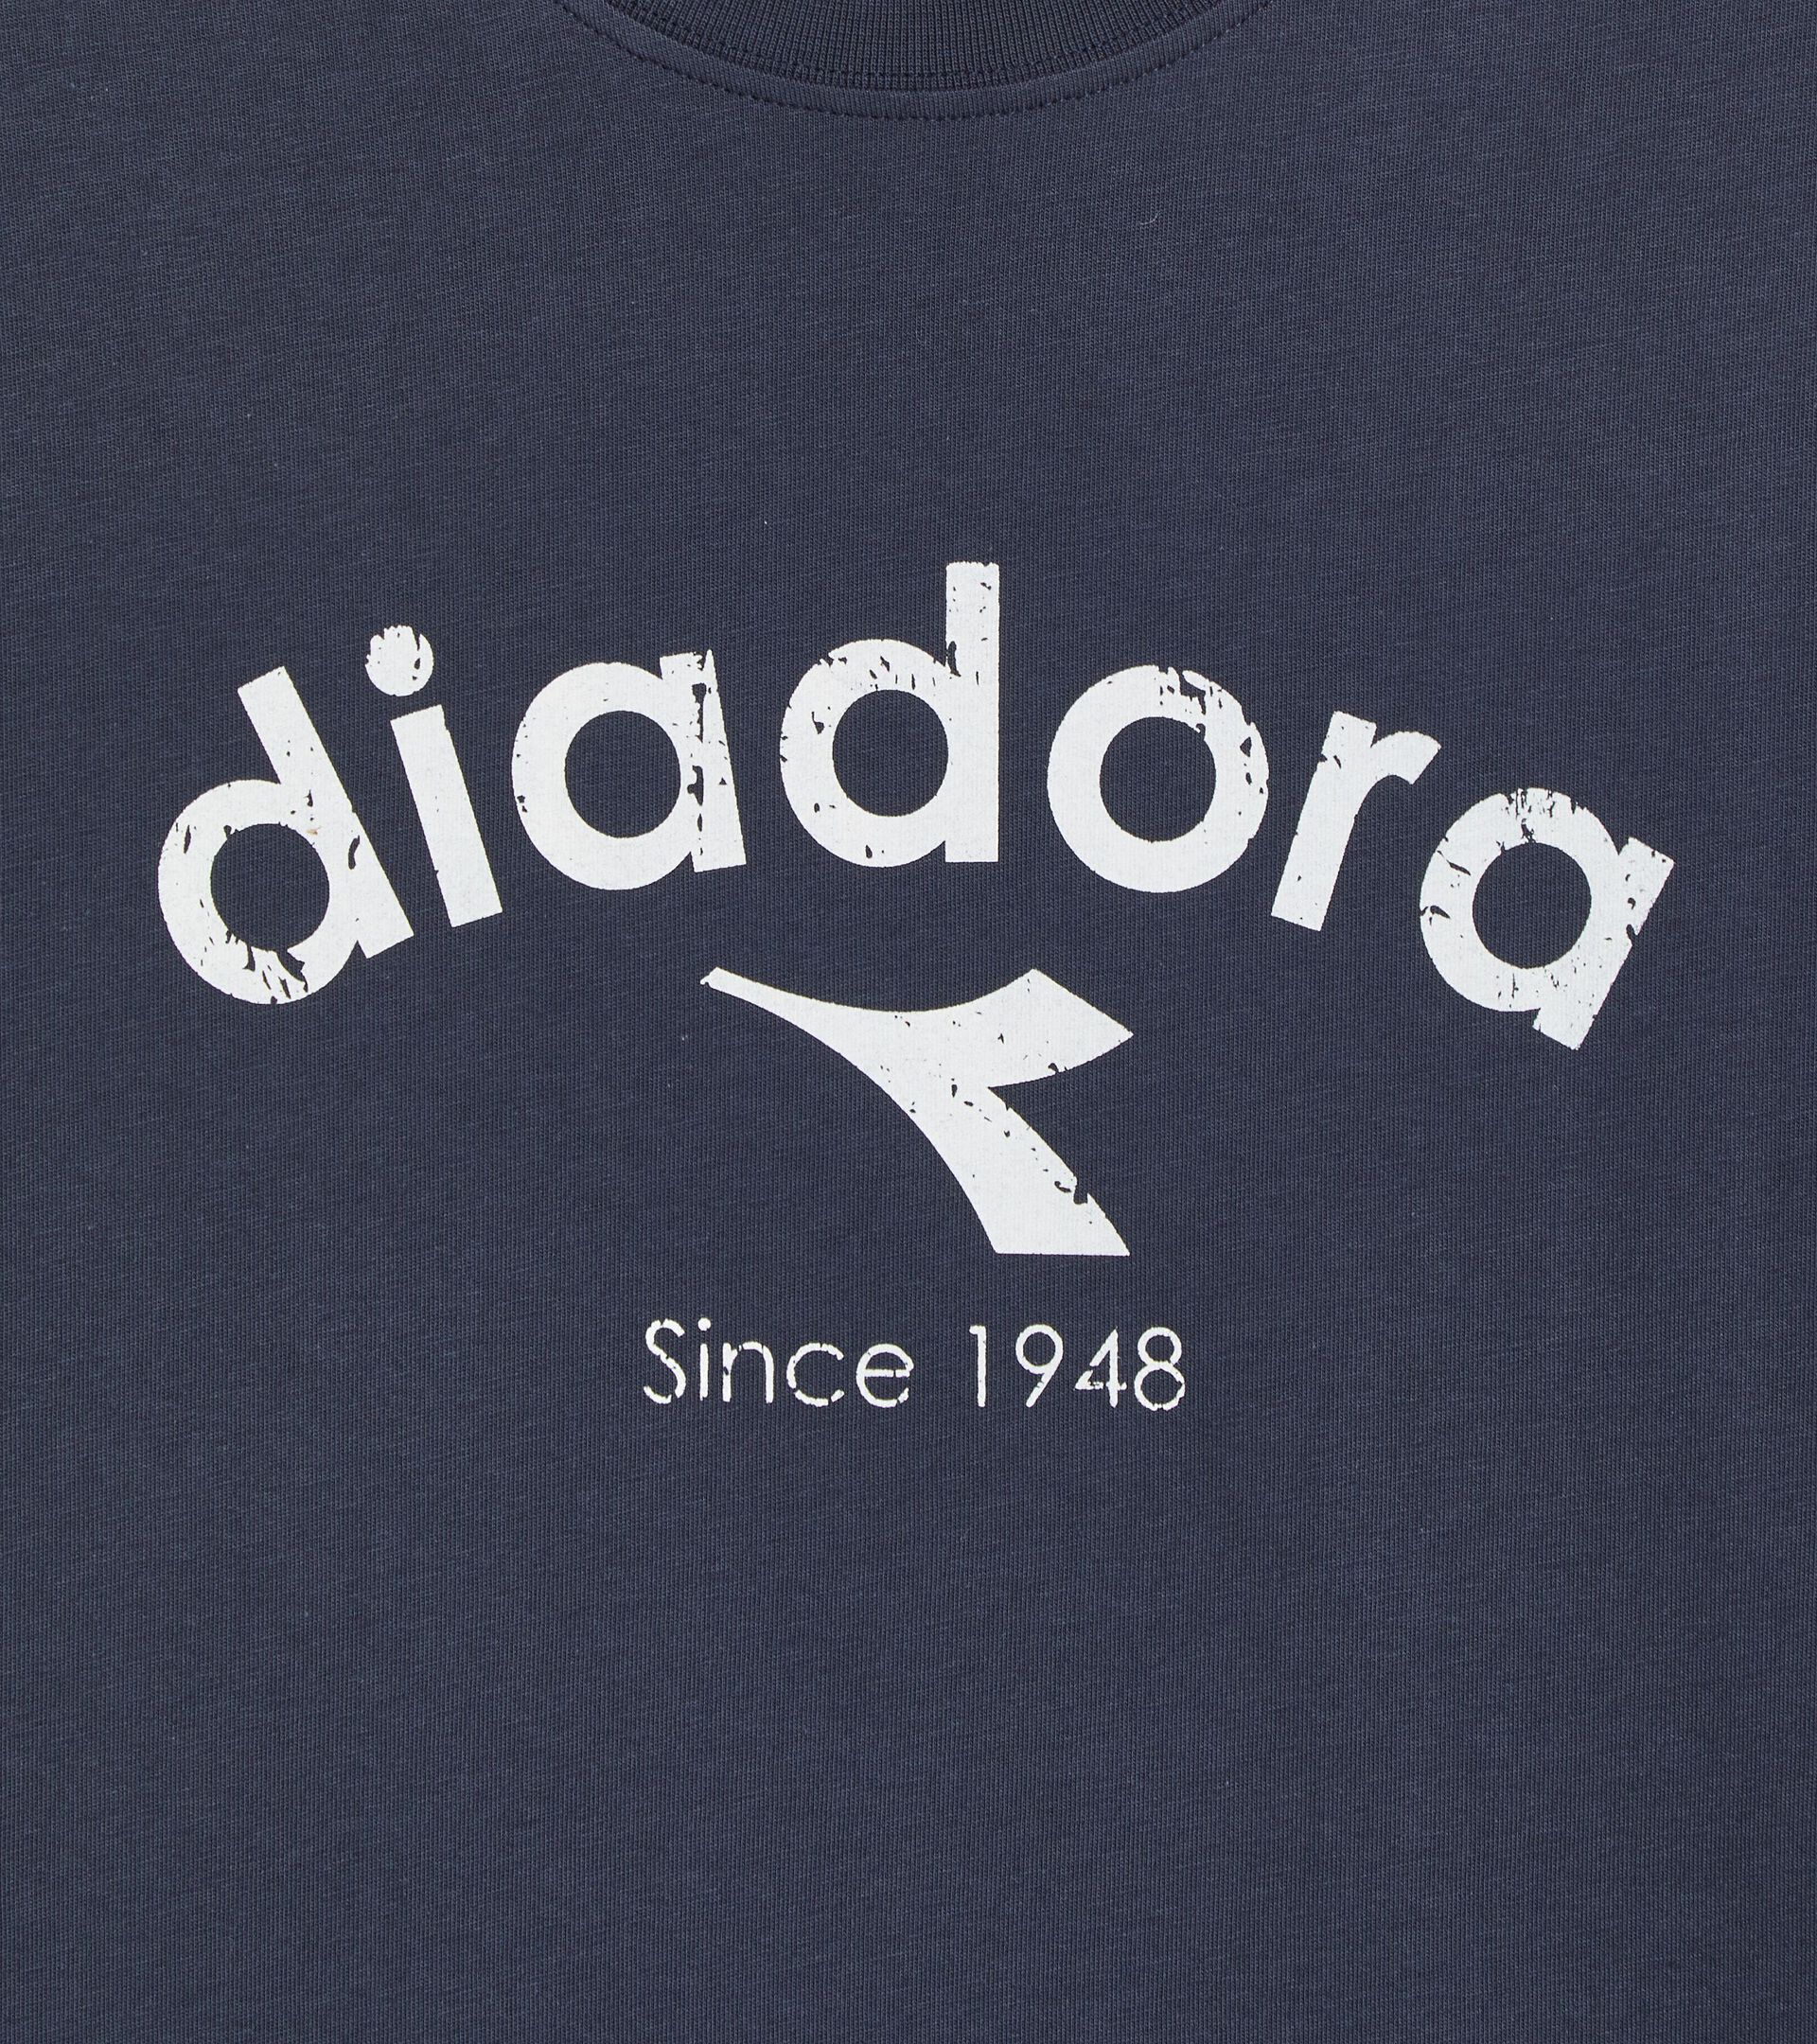 T-shirt - Gender Neutral T-SHIRT SS ATHL. LOGO BLU PROFONDO - Diadora